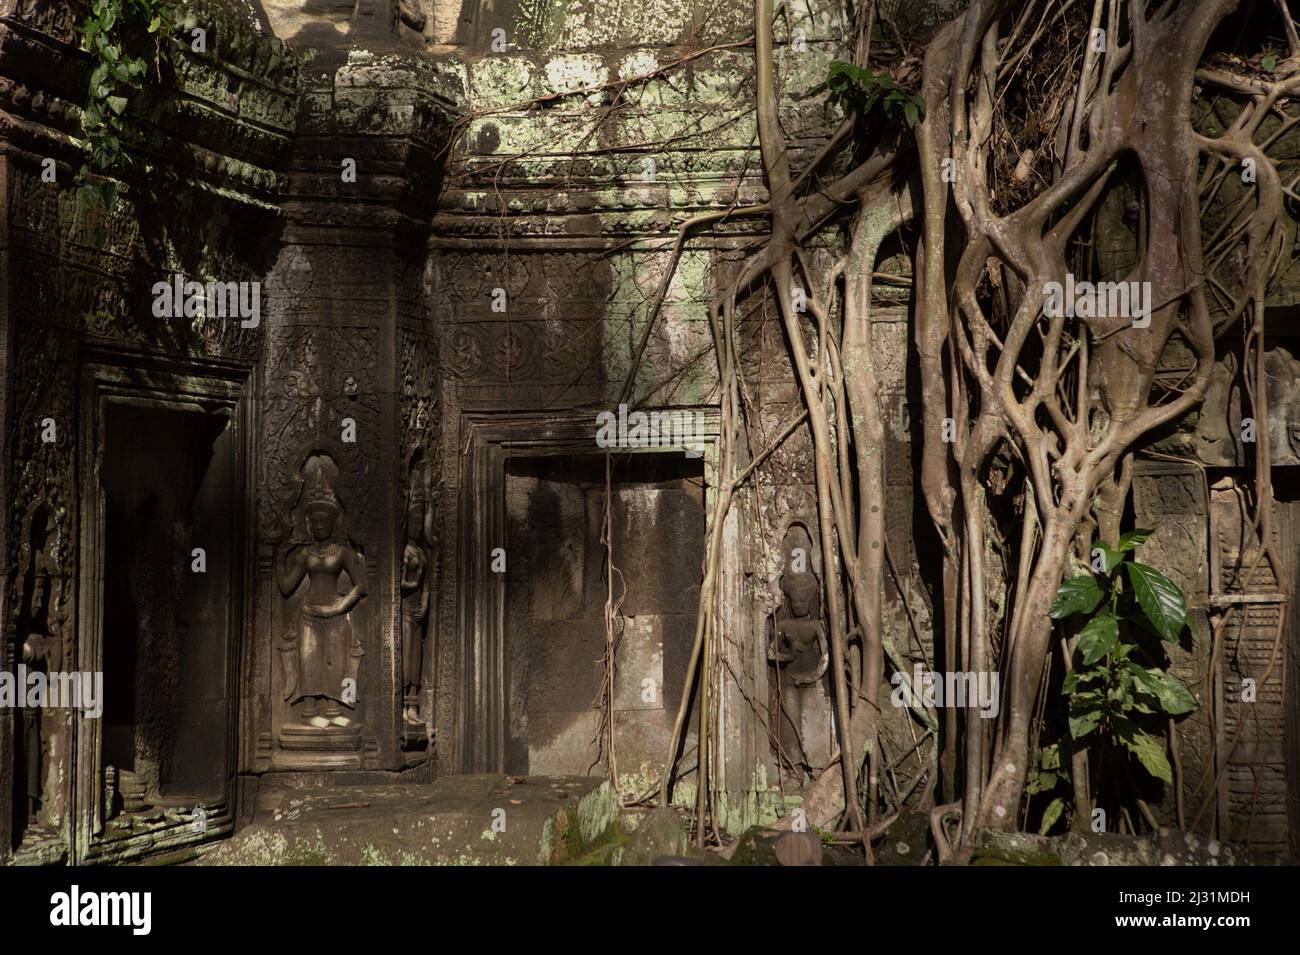 Wurzeln eines riesigen Ficus-Baumes, der an einer Wand im Tempelgelände Ta Prohm in Siem Reap, Kambodscha wächst. Einst als Set für den Hollywood-Film Lara Croft aus dem Jahr 2001 verwendet: Tomb Raider mit Angelina Jolie in der Hauptrolle, bekannt für seine riesigen Wurzeln von wilden Bäumen, die tief zwischen den Steinen verwurzelt sind, war Ta Prohm ein Kloster für Mahayana-Buddhismus-Studenten, bevor es für Hunderte von Jahren verlassen und vergessen wurde. Stockfoto